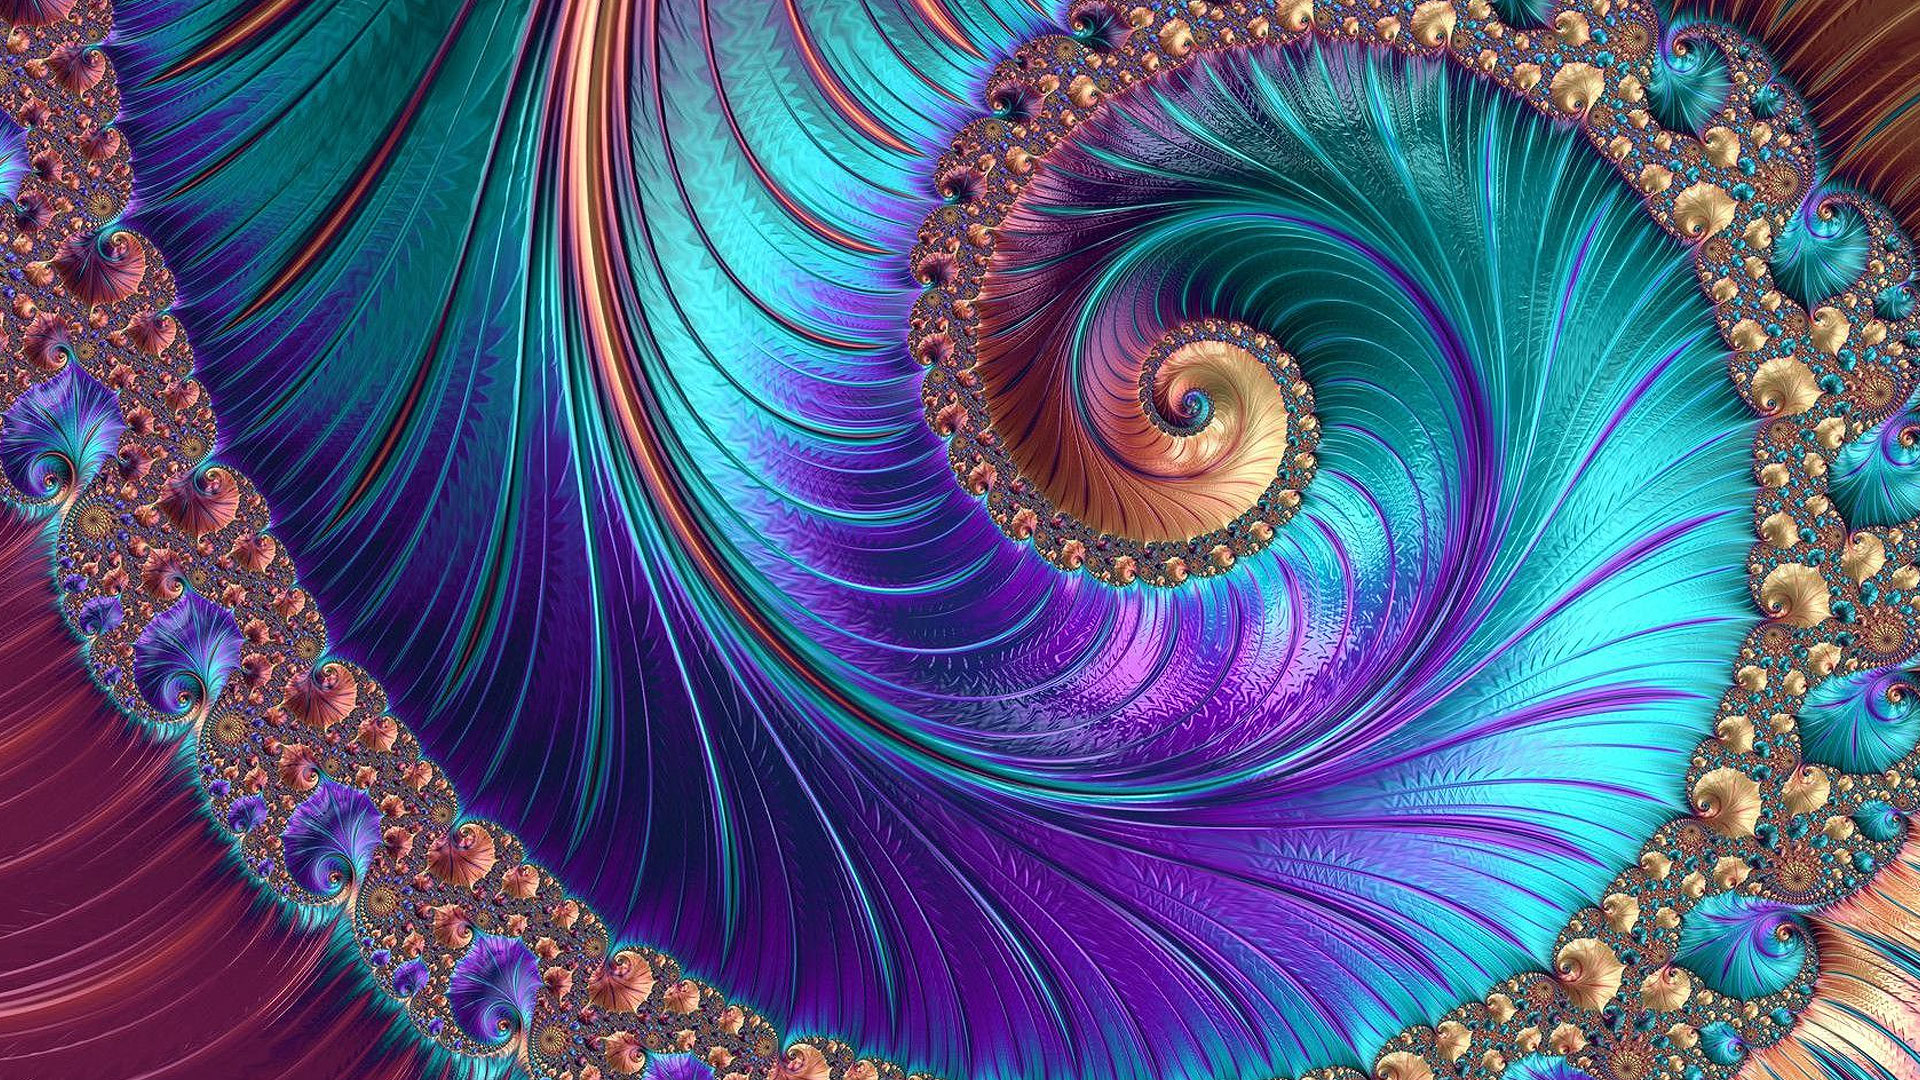 L'art fractal : des images issues de logiciels